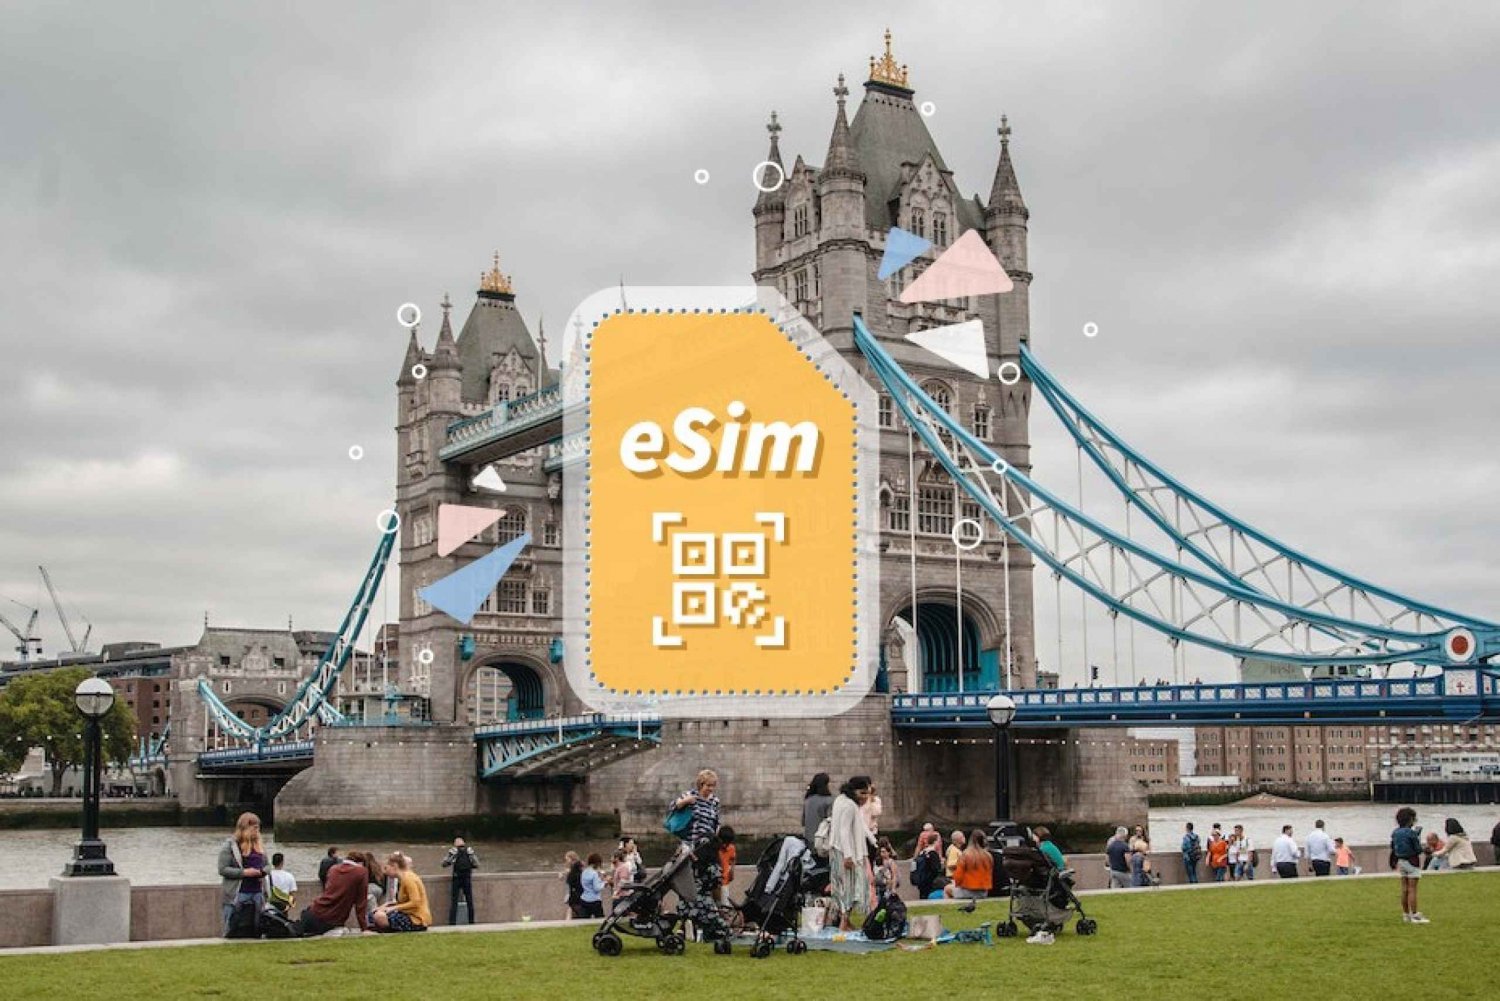 VK/Europa: 5G eSim mobiel data-abonnement